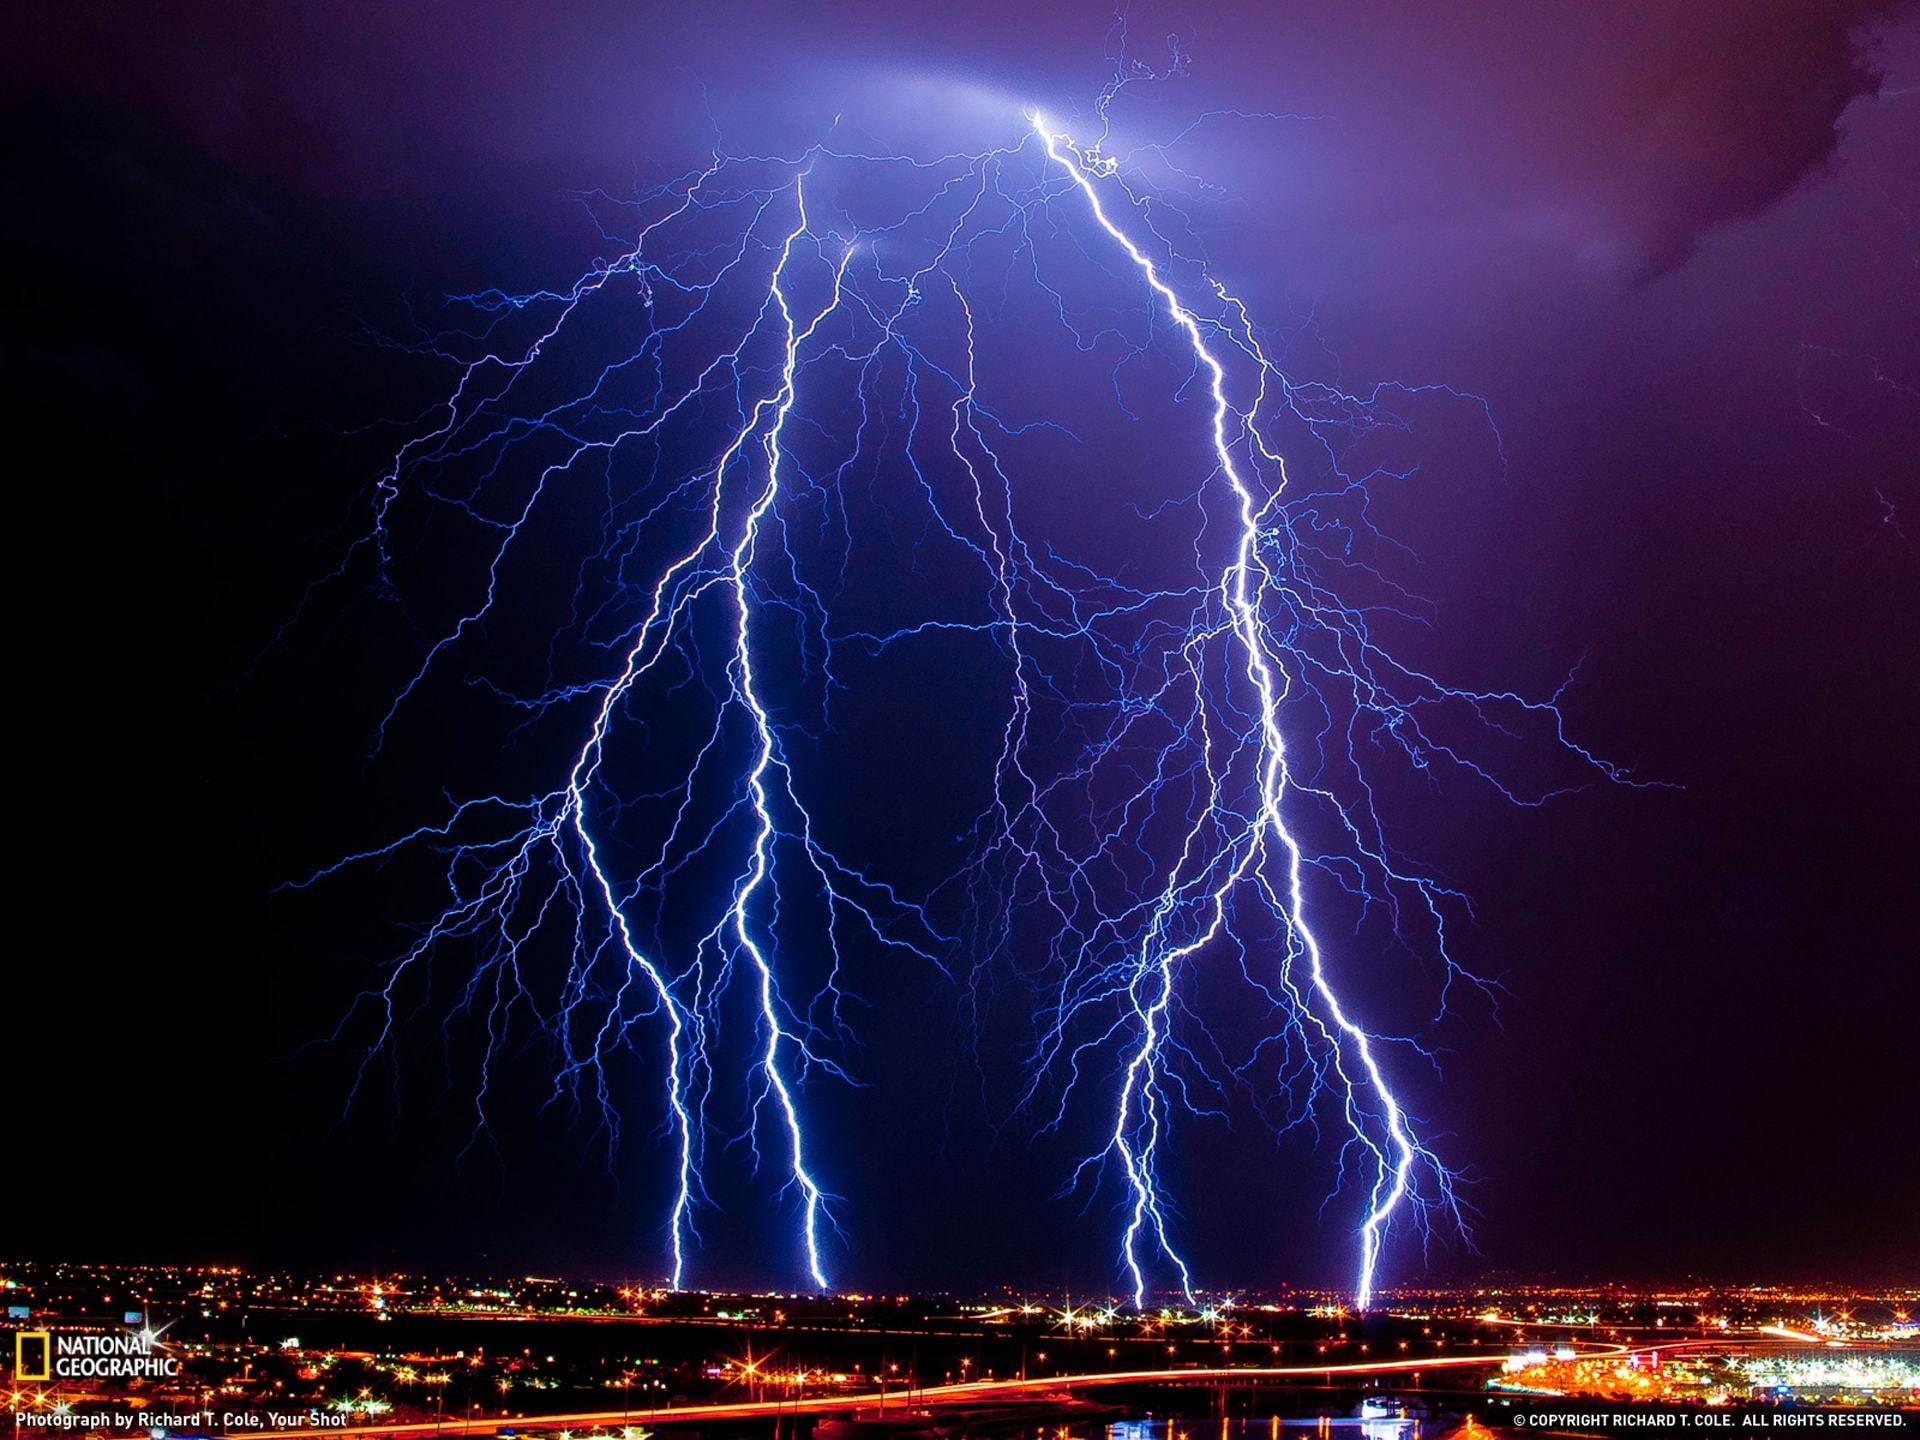 Lightning Arizona-National Geographic wallpaper, lightning strike National Geographic TV show still